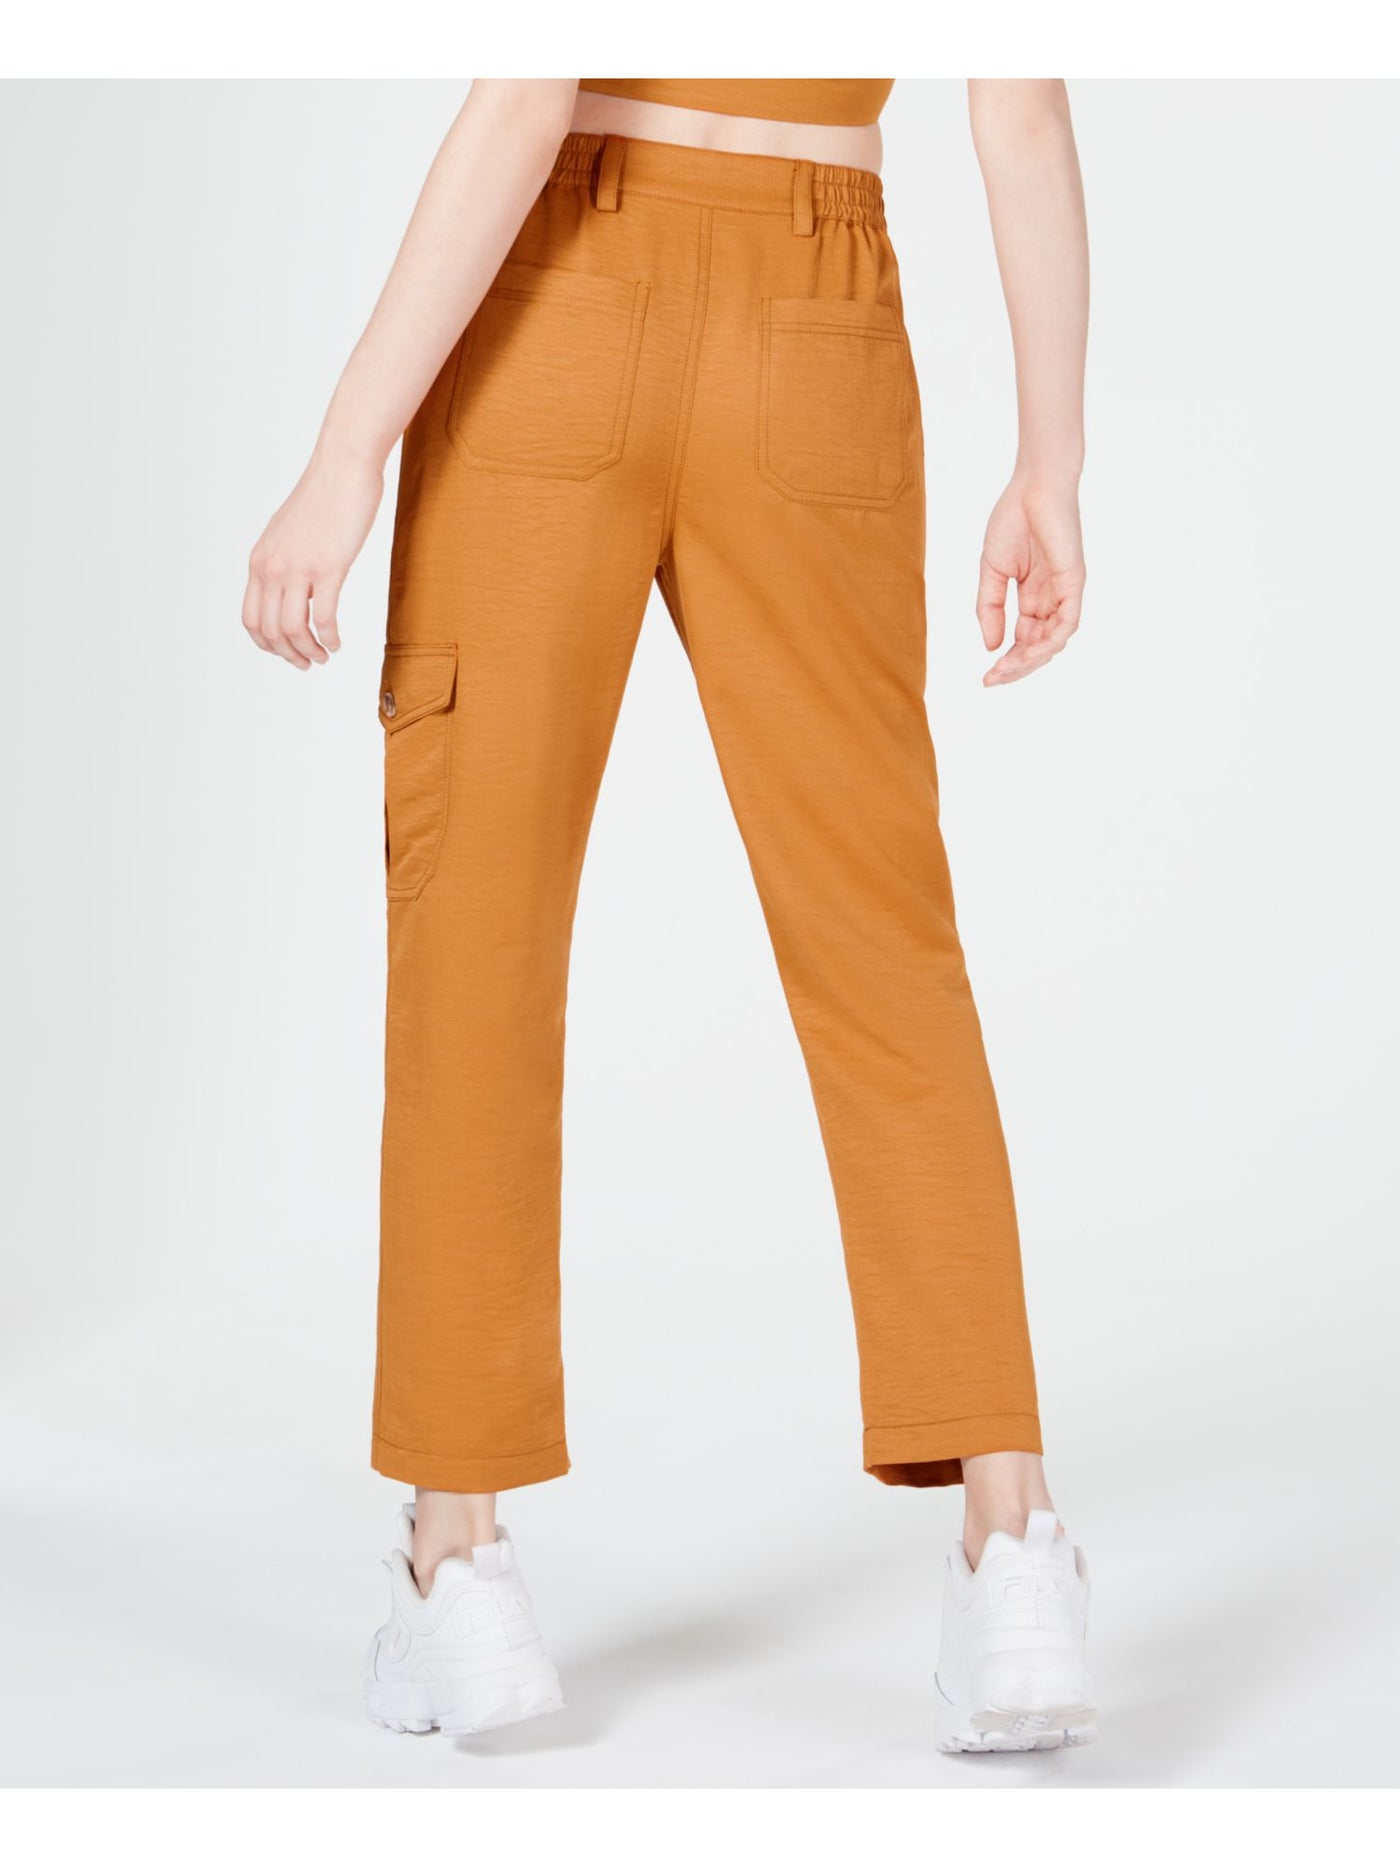 J.O.A. Womens Orange Cargo Pants Size: L